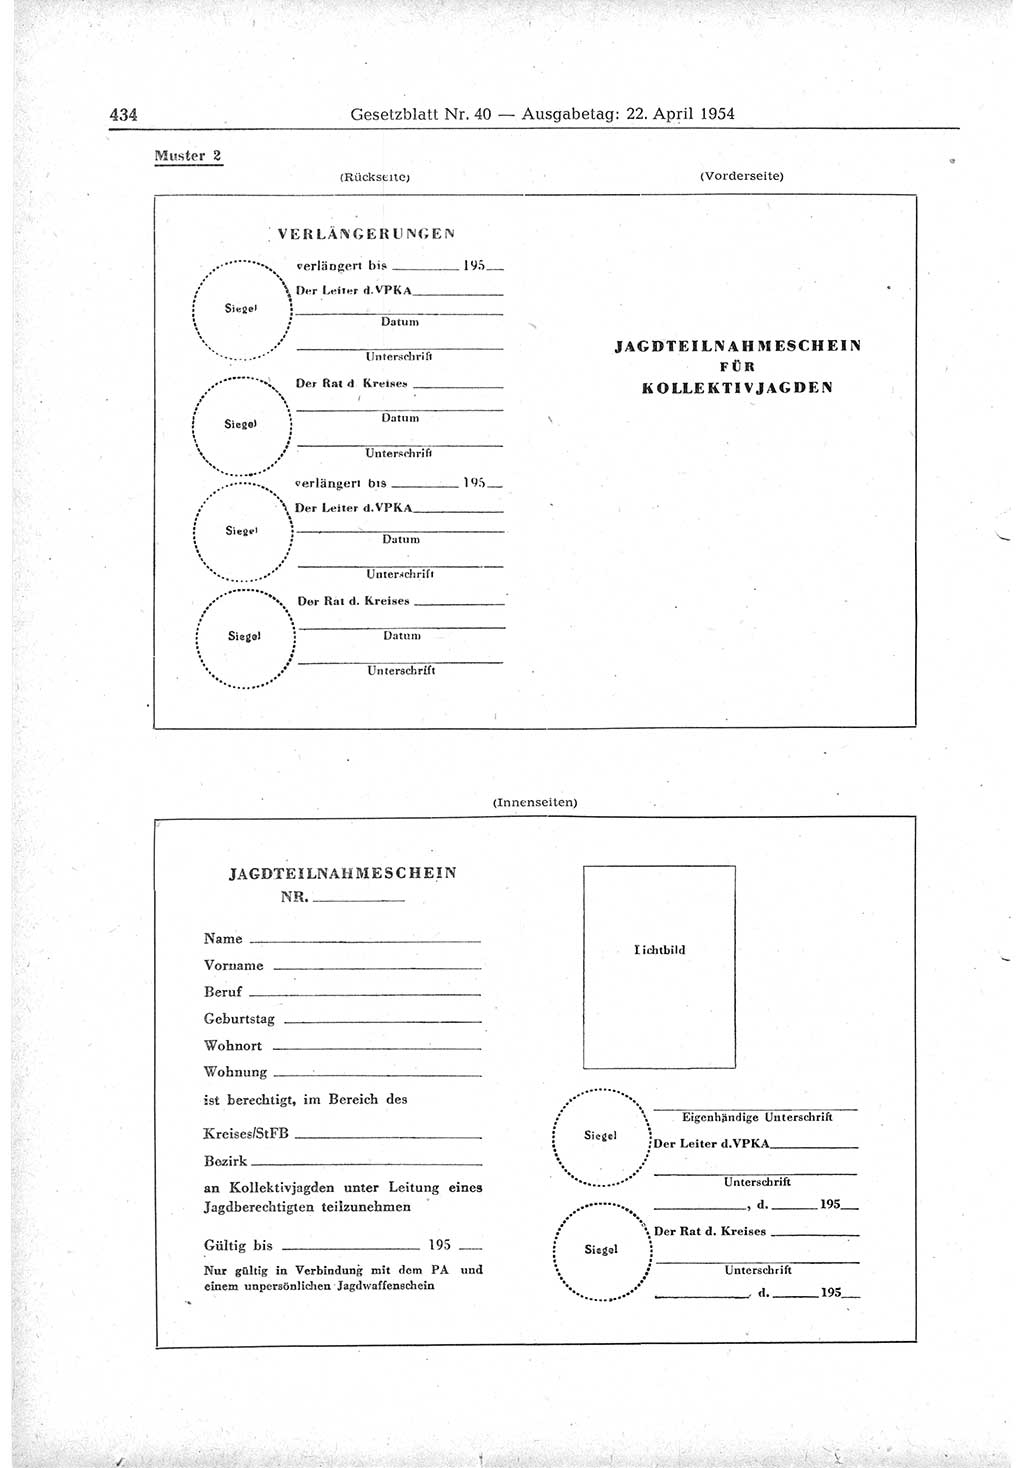 Gesetzblatt (GBl.) der Deutschen Demokratischen Republik (DDR) 1954, Seite 434 (GBl. DDR 1954, S. 434)